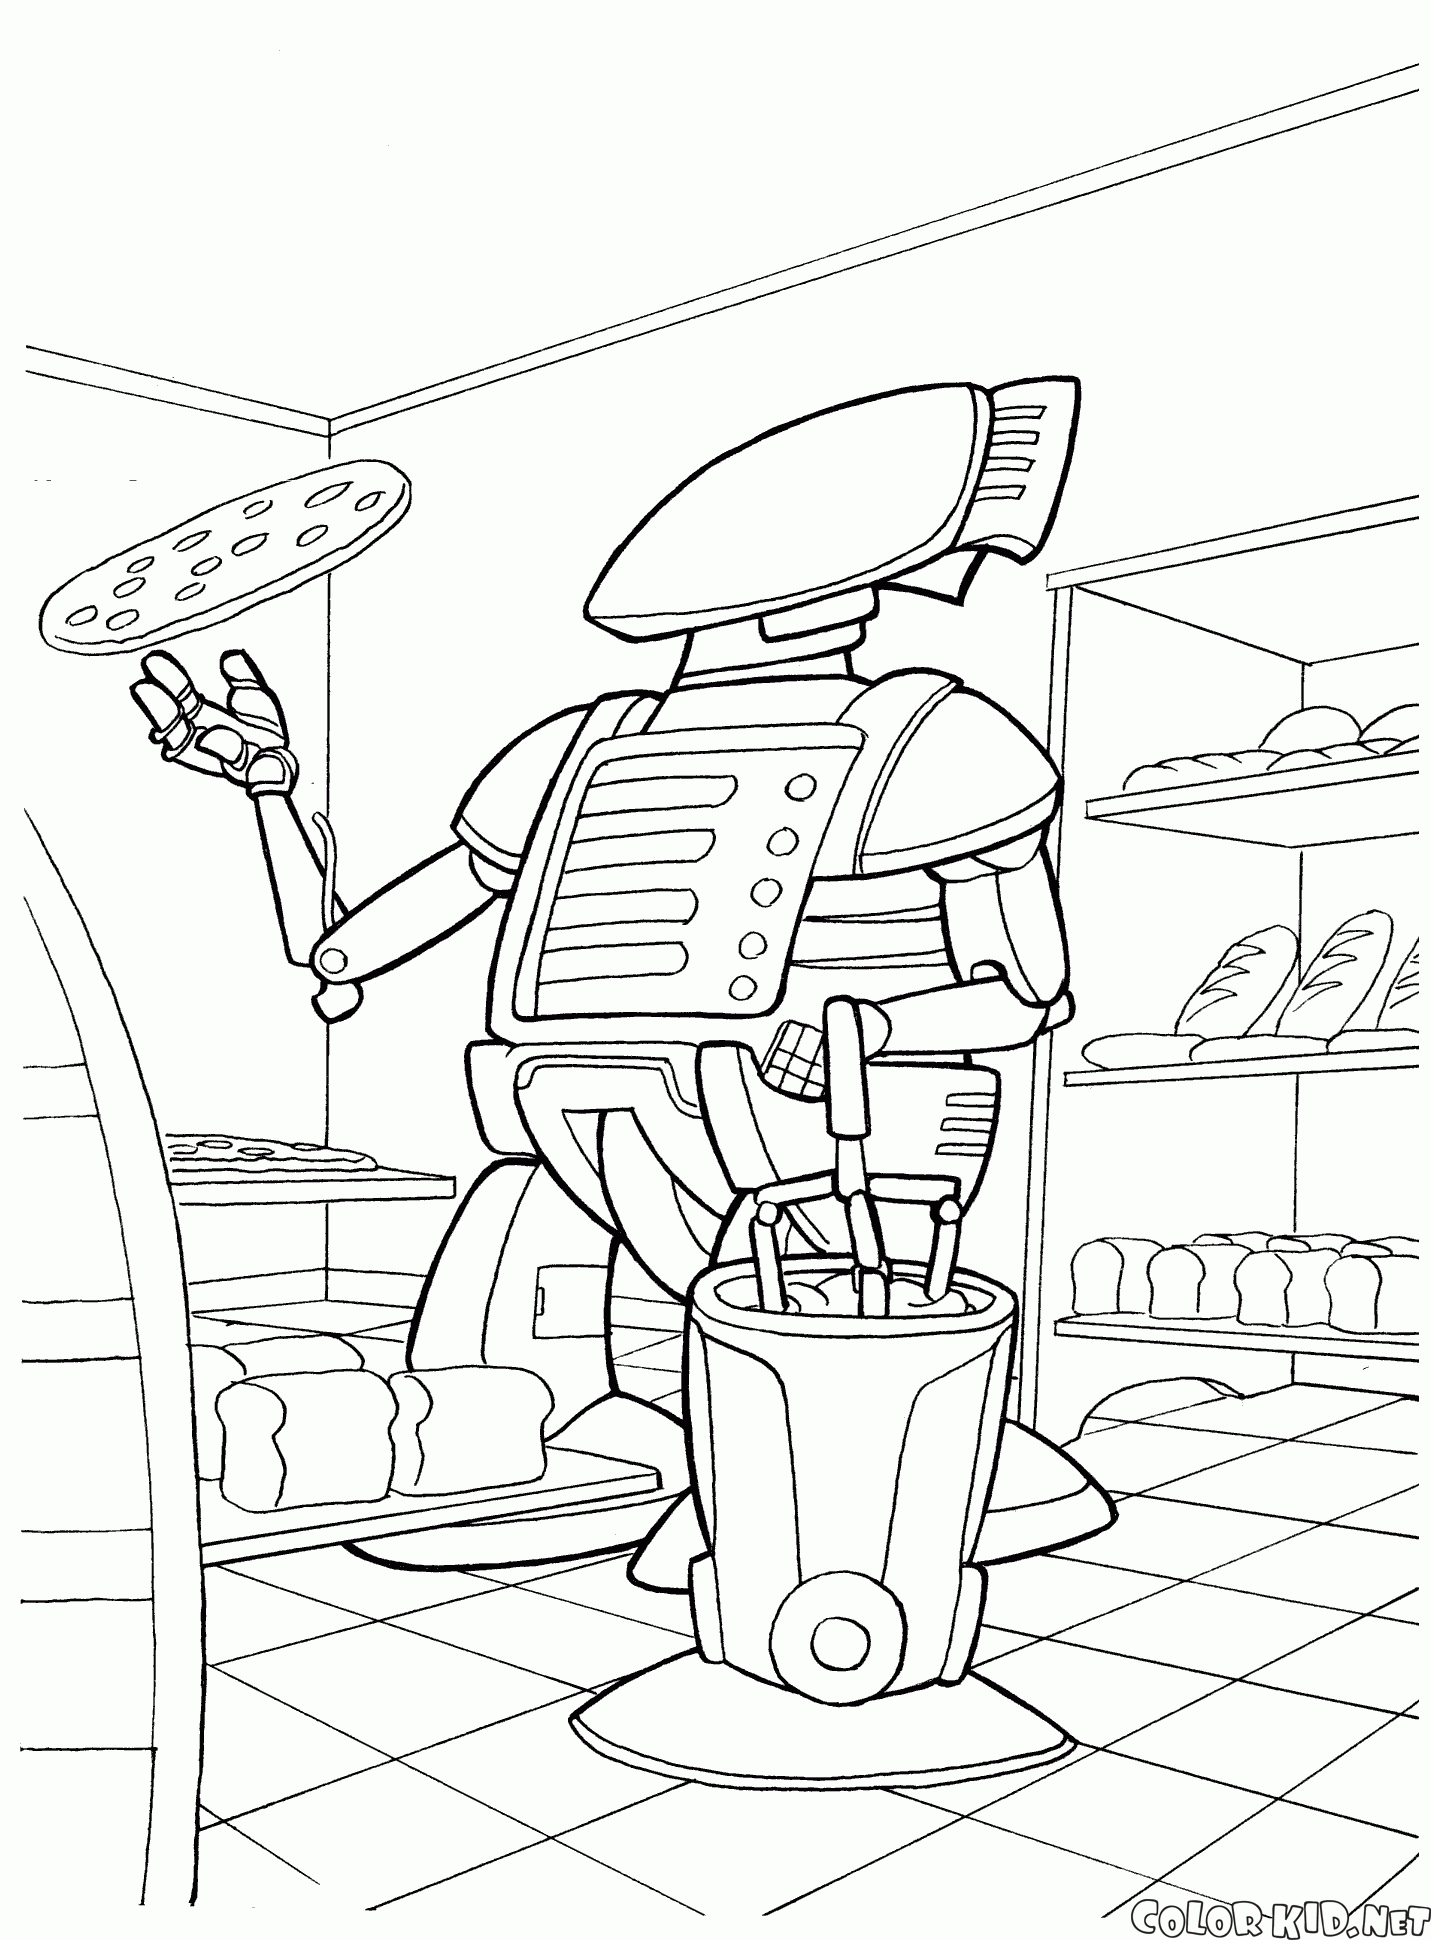 Robot kuchni